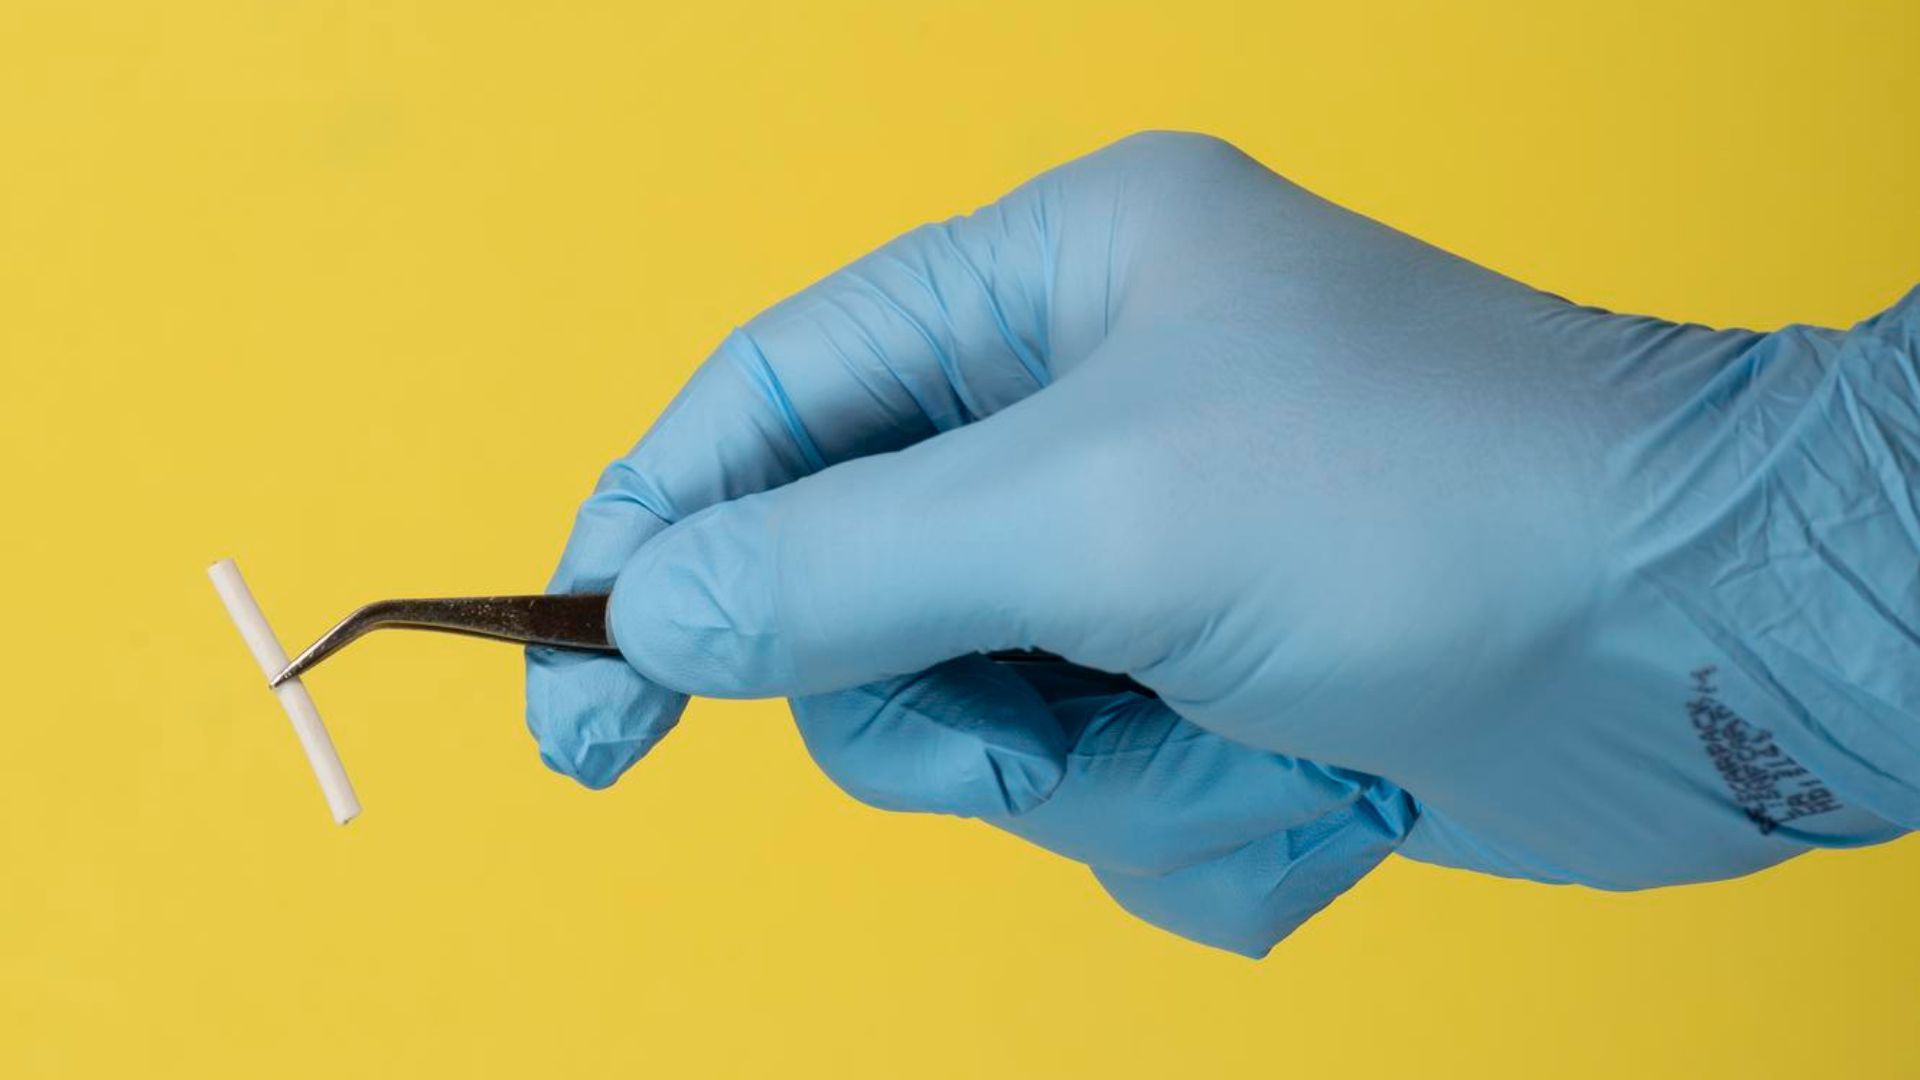 como funciona o implante anticoncepcional?